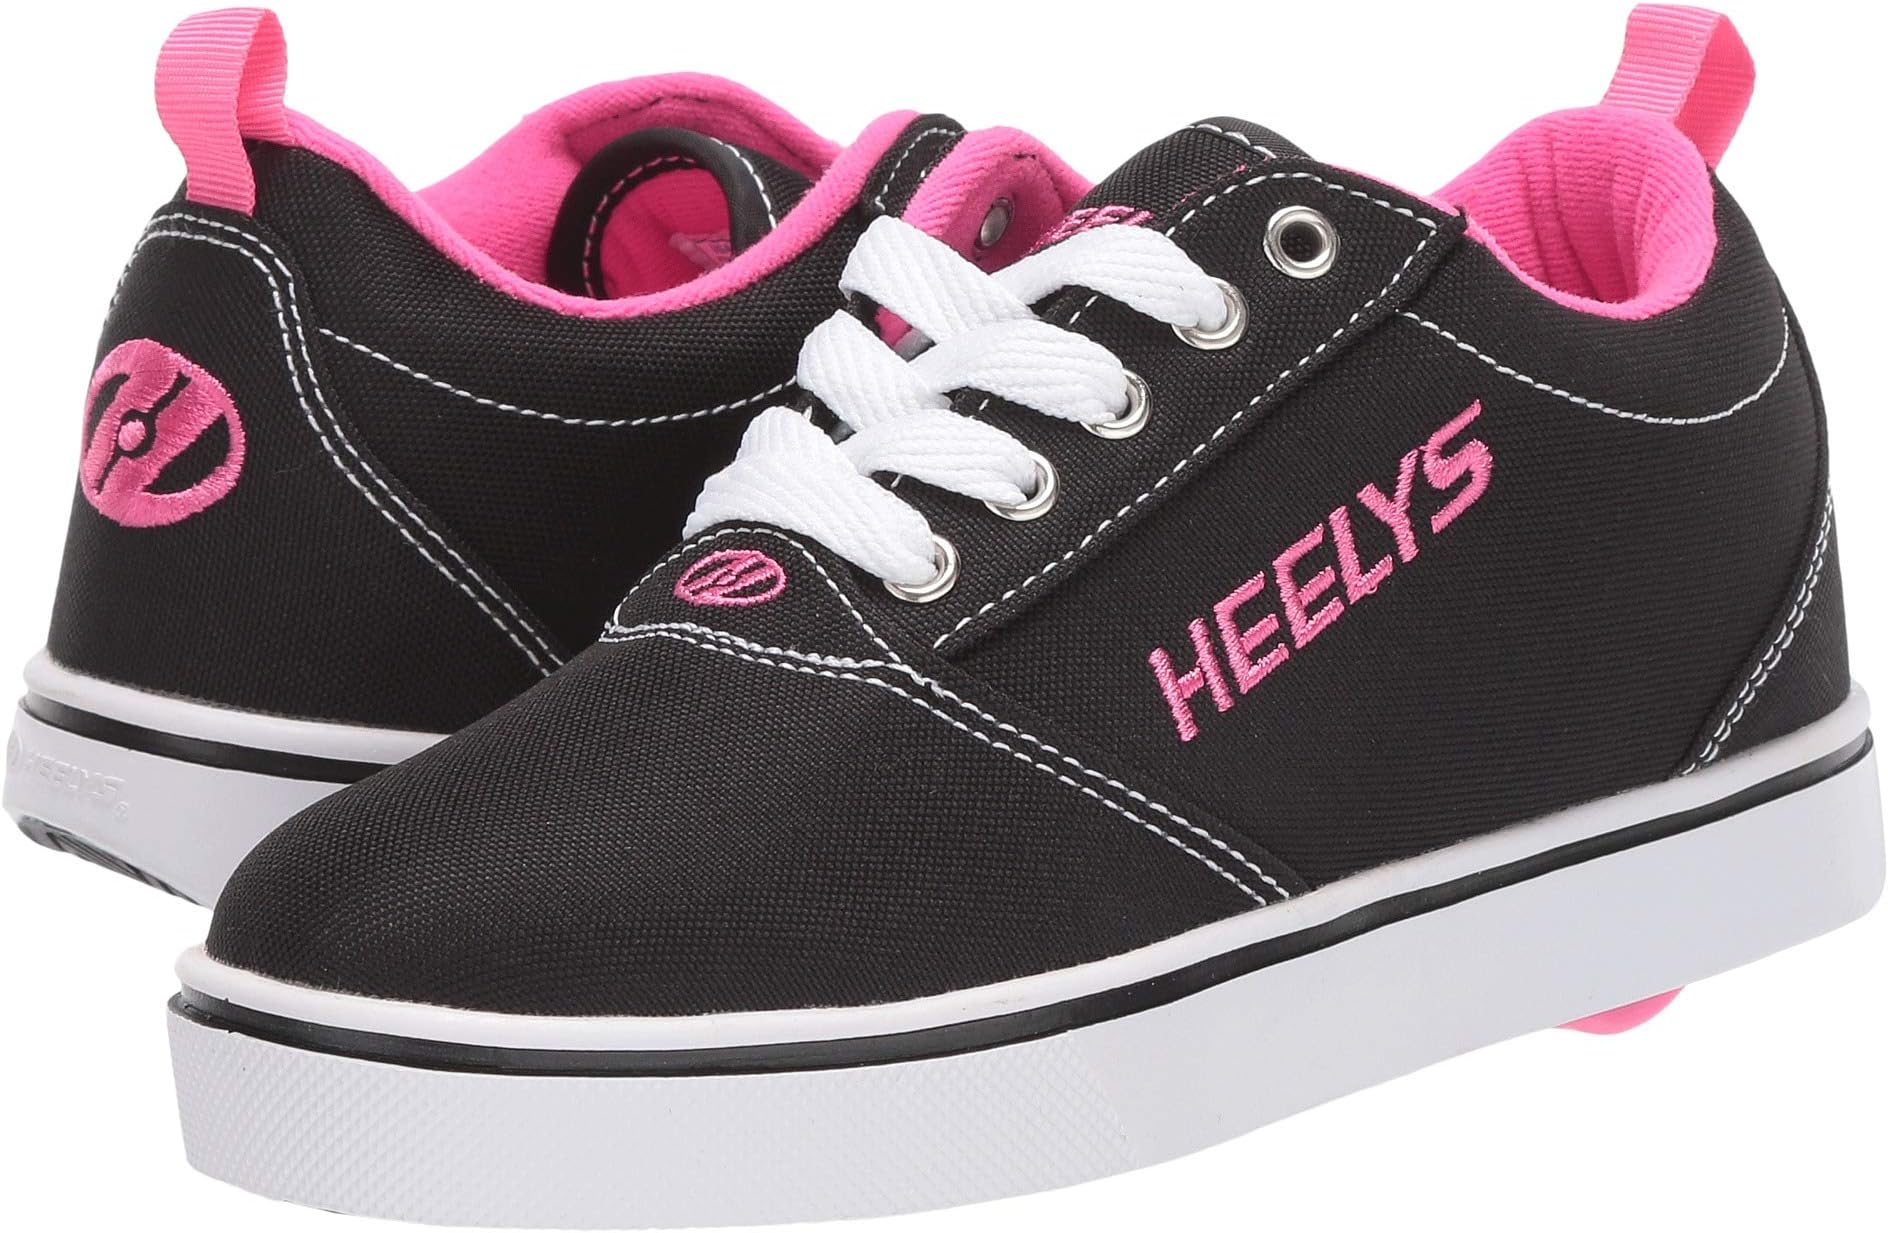 Кроссовки Pro 20 Heelys, цвет Black/White/Pink кроссовки heelys racer 20 цвет hush pink